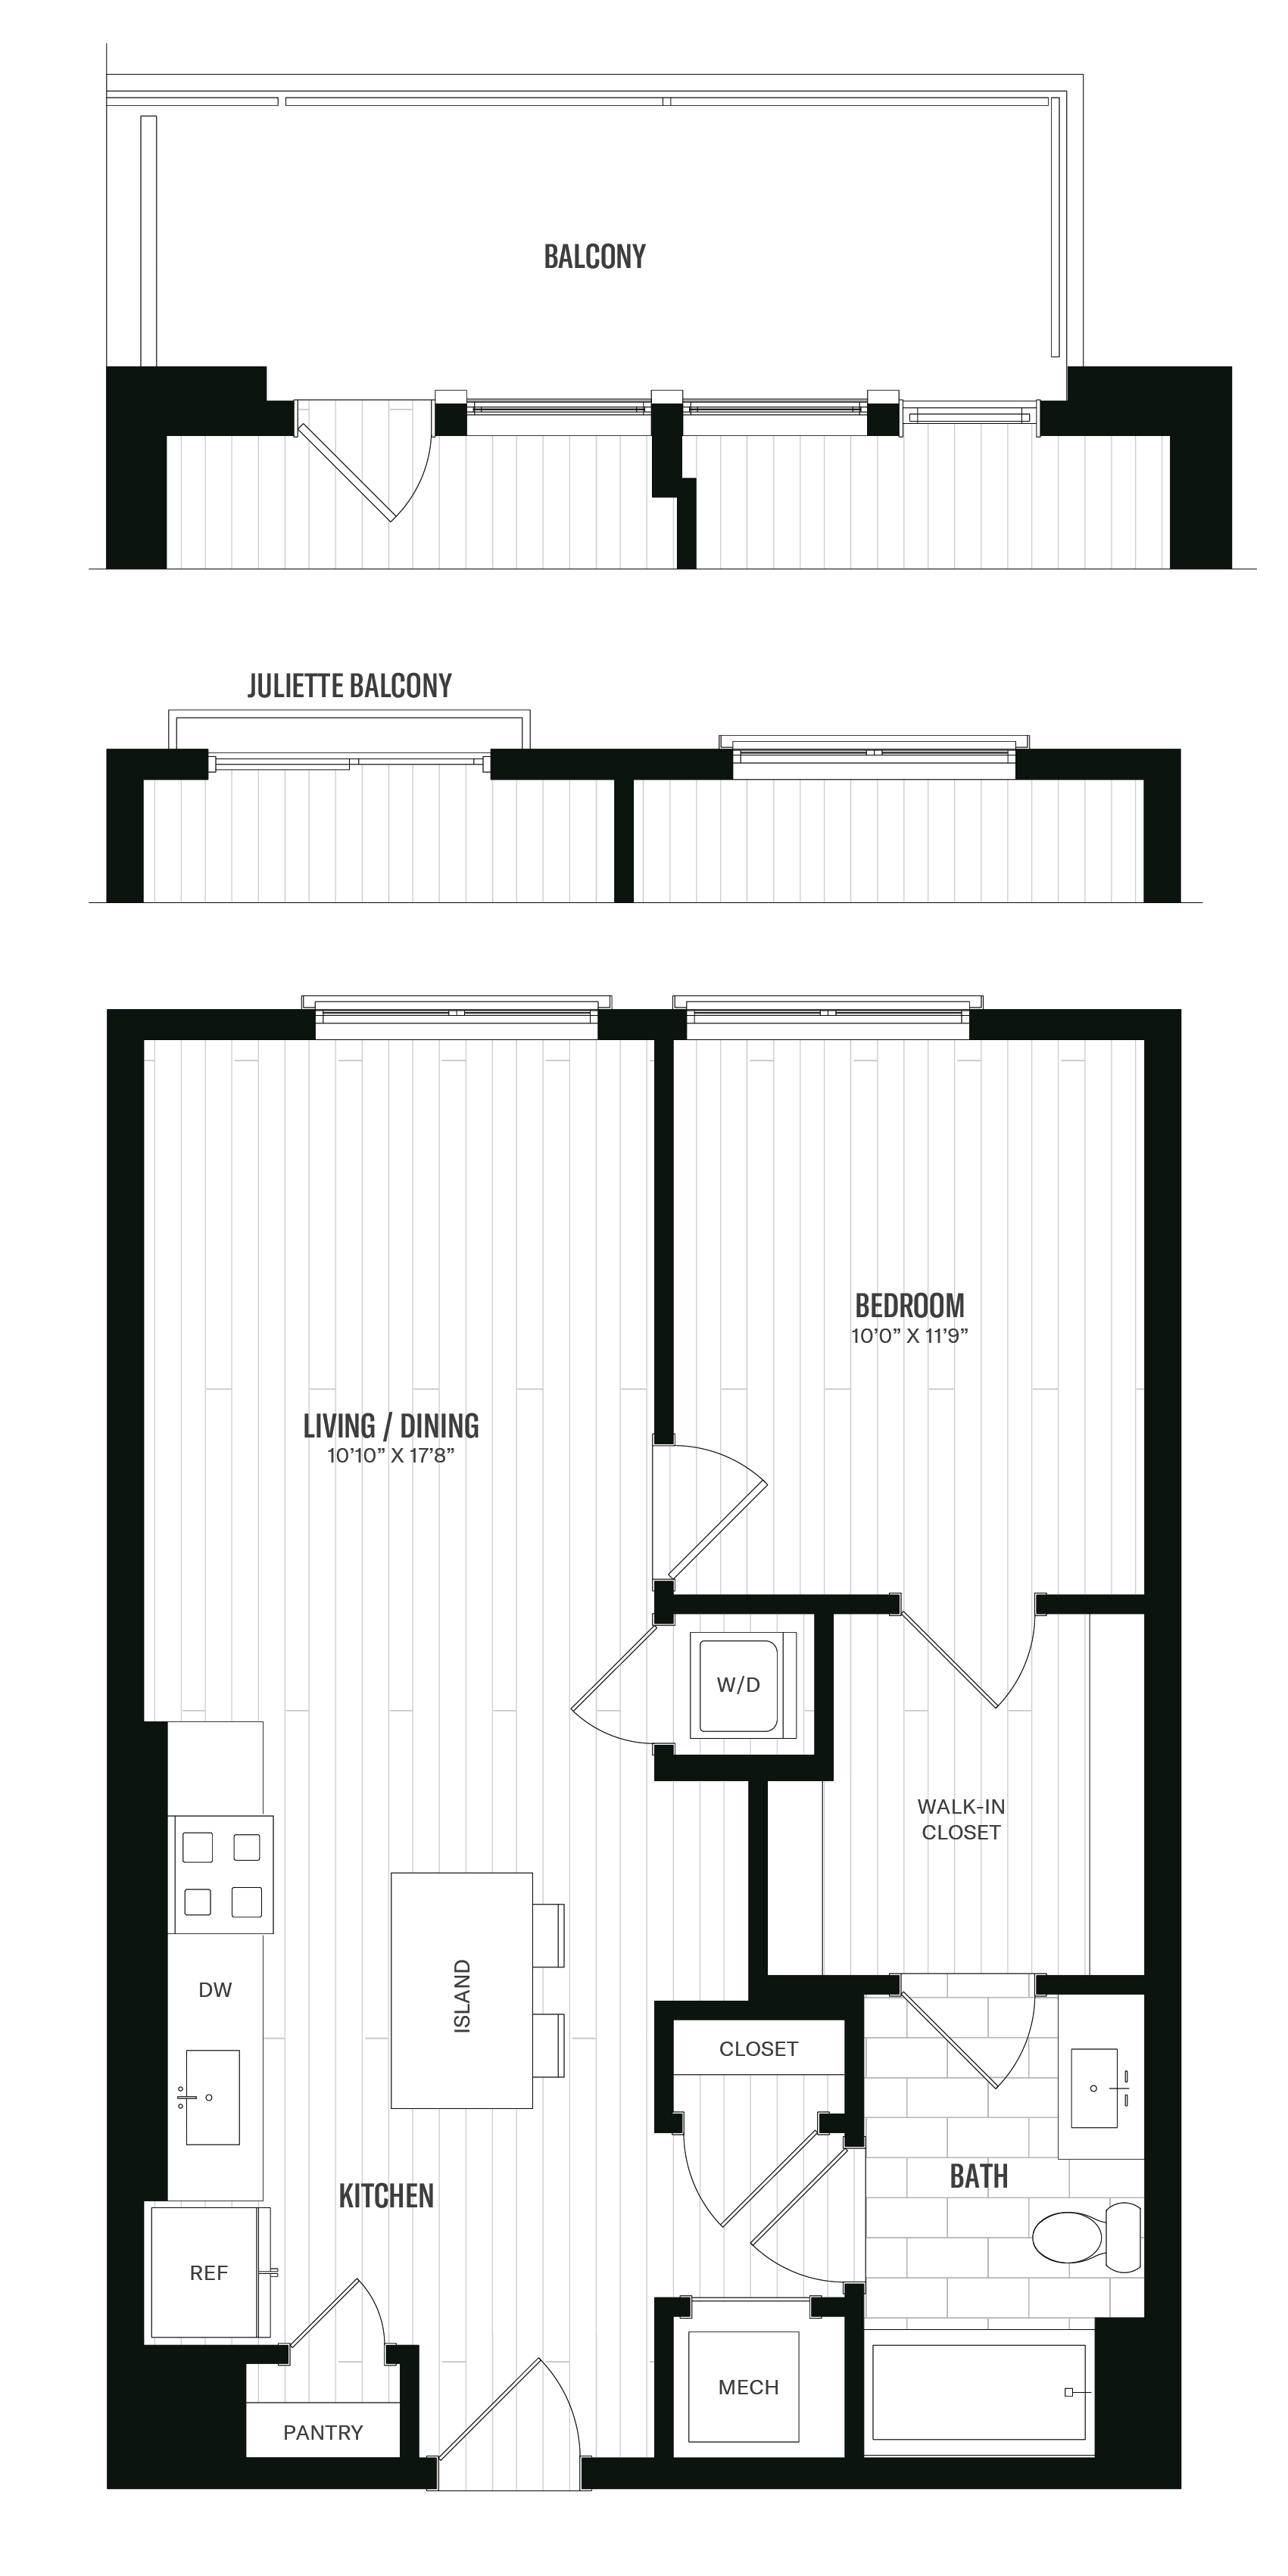 Floorplan image of unit 328